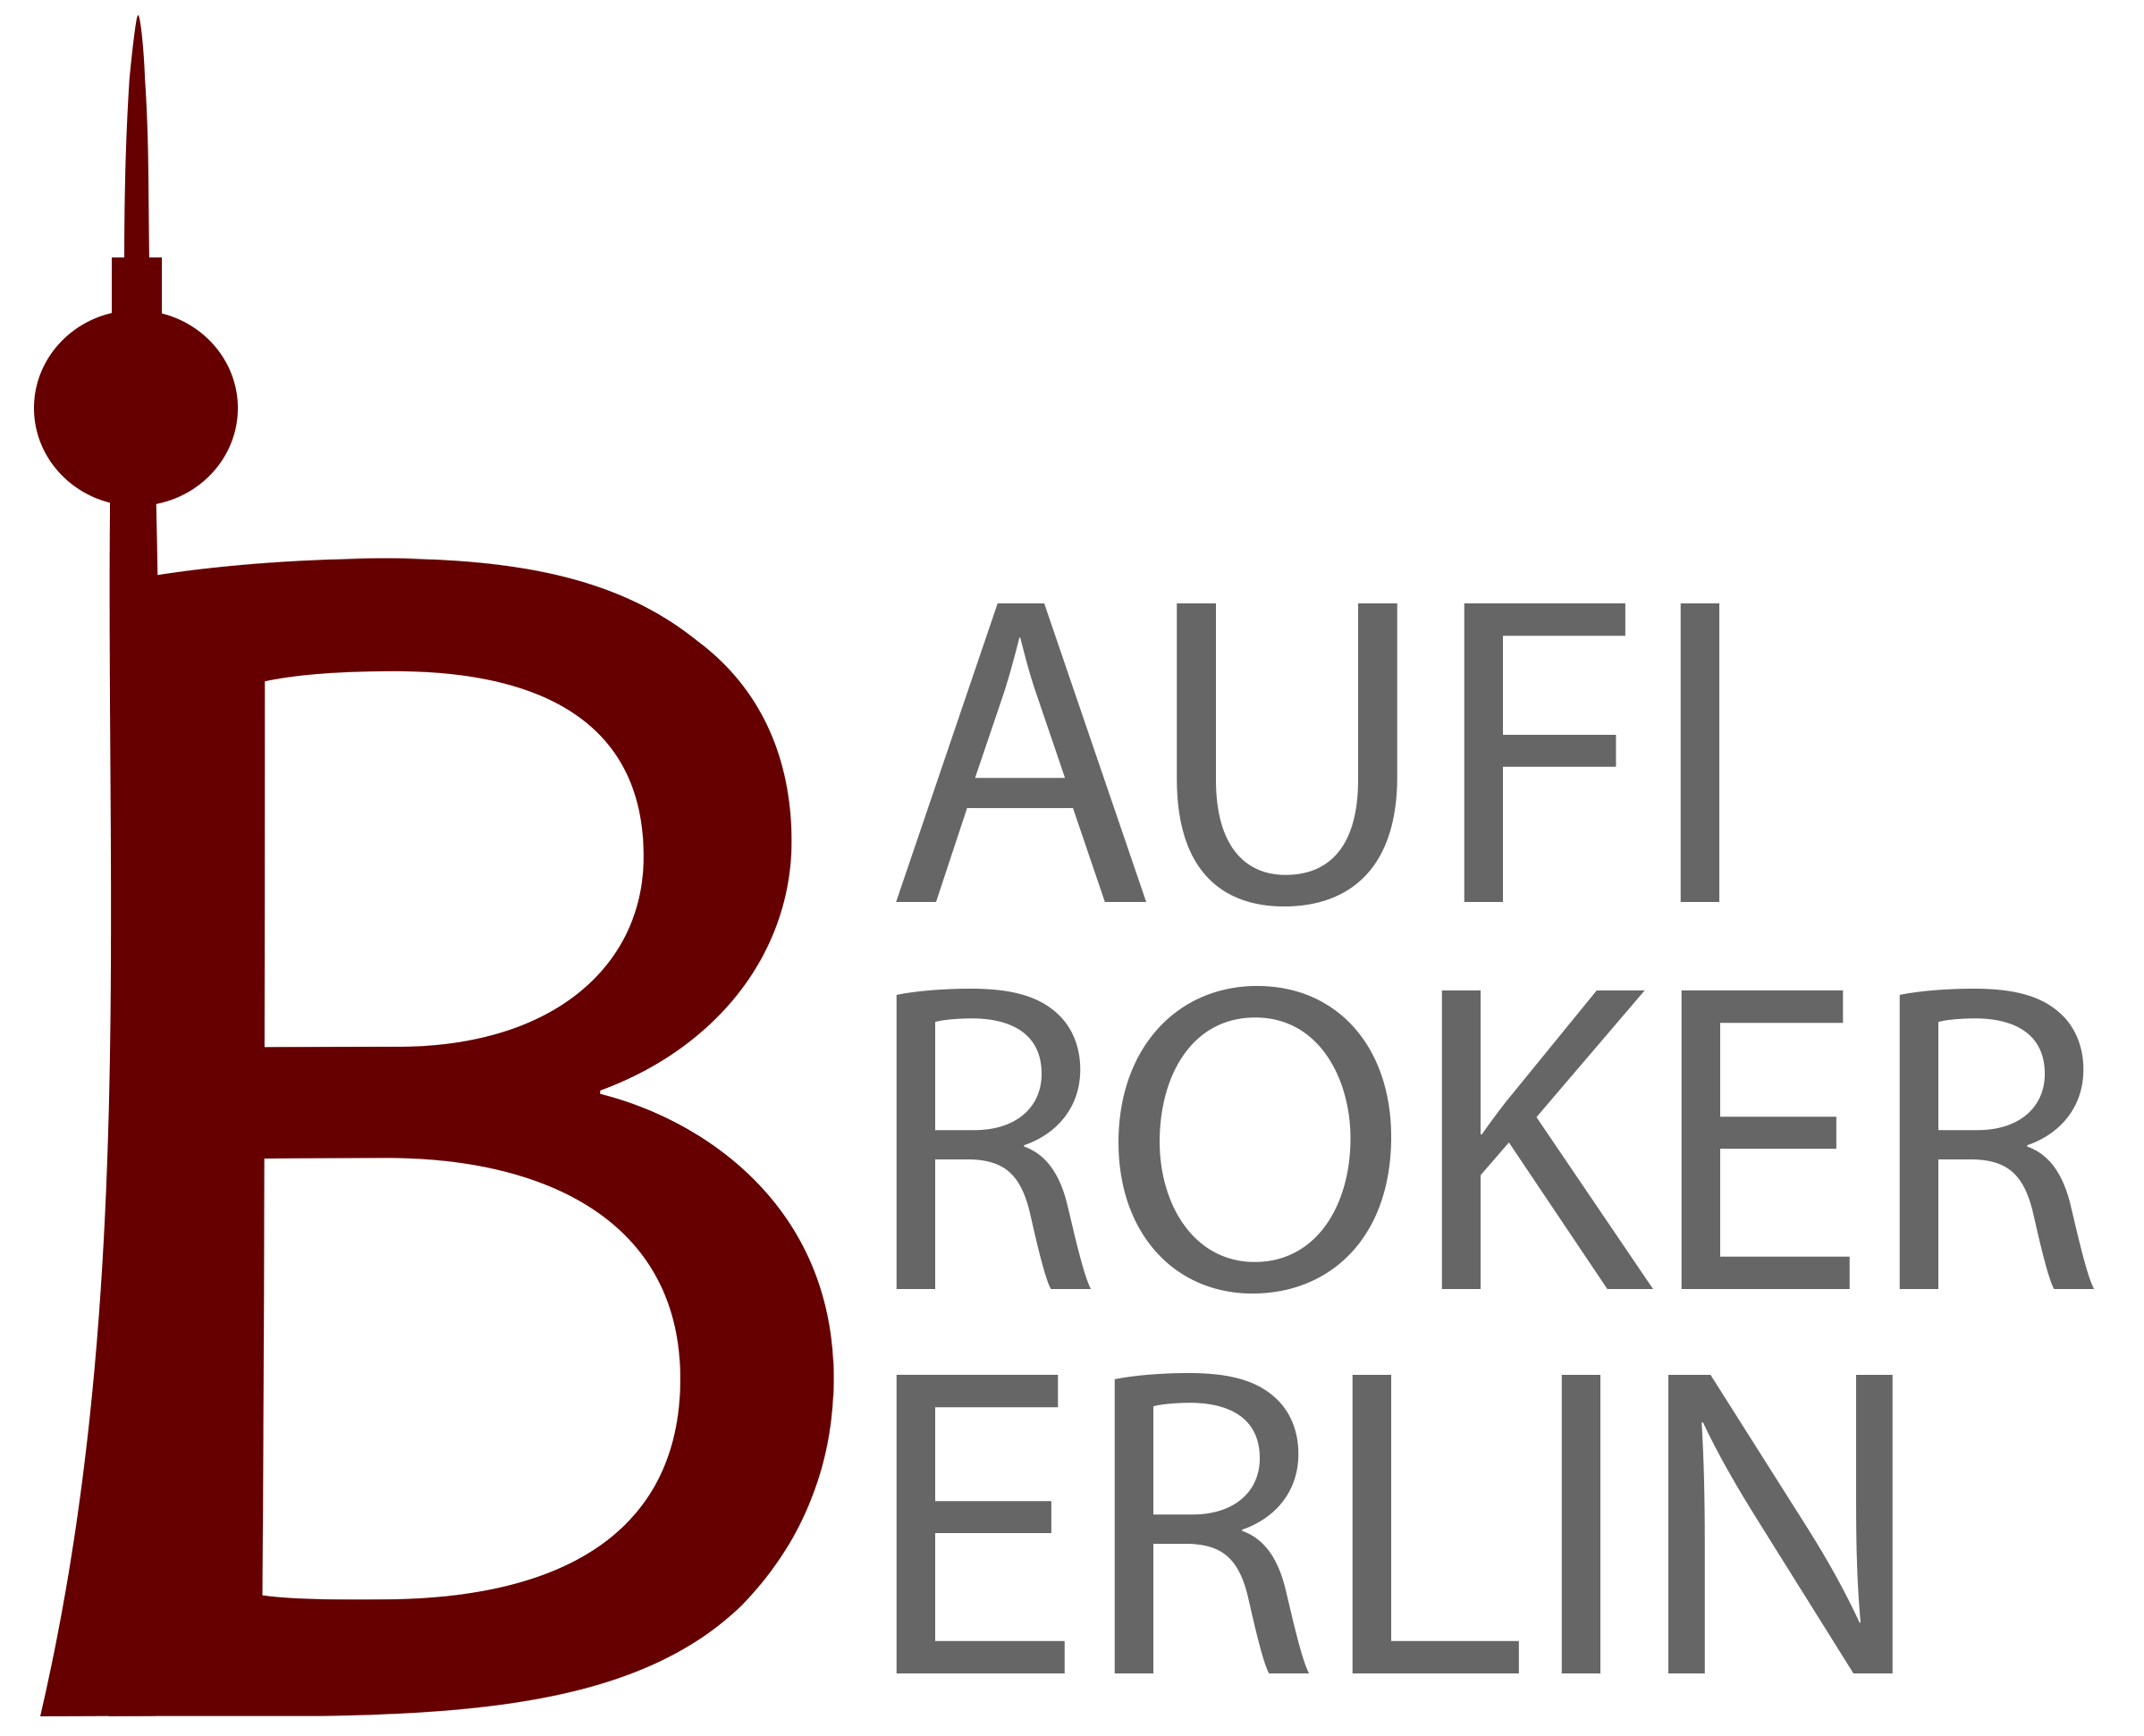 BBB Baufi Broker Berlin GmbH